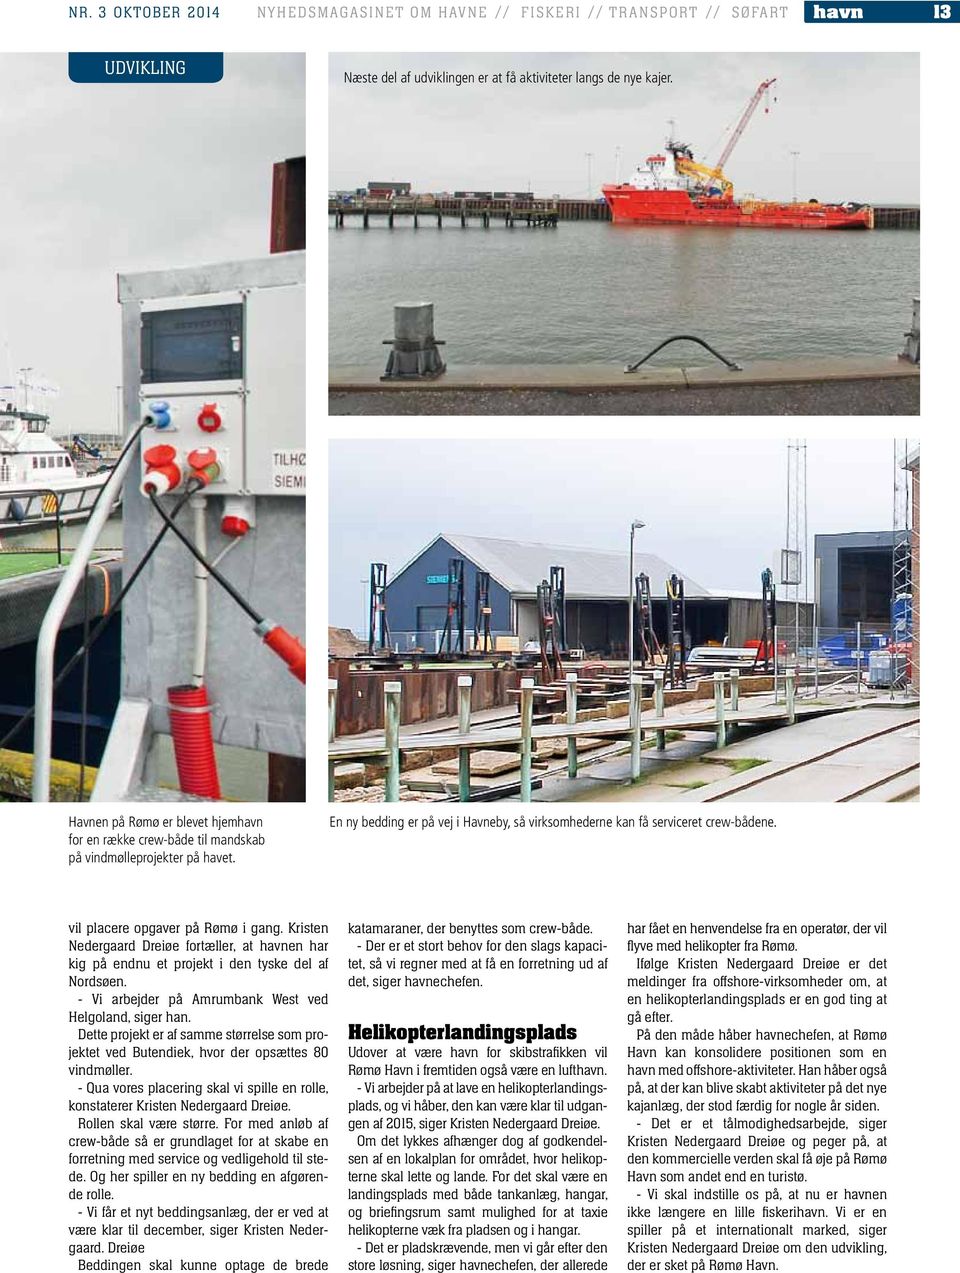 vil placere opgaver på Rømø i gang. Kristen Nedergaard Dreiøe fortæller, at havnen har kig på endnu et projekt i den tyske del af Nordsøen. - Vi arbejder på Amrumbank West ved Helgoland, siger han.